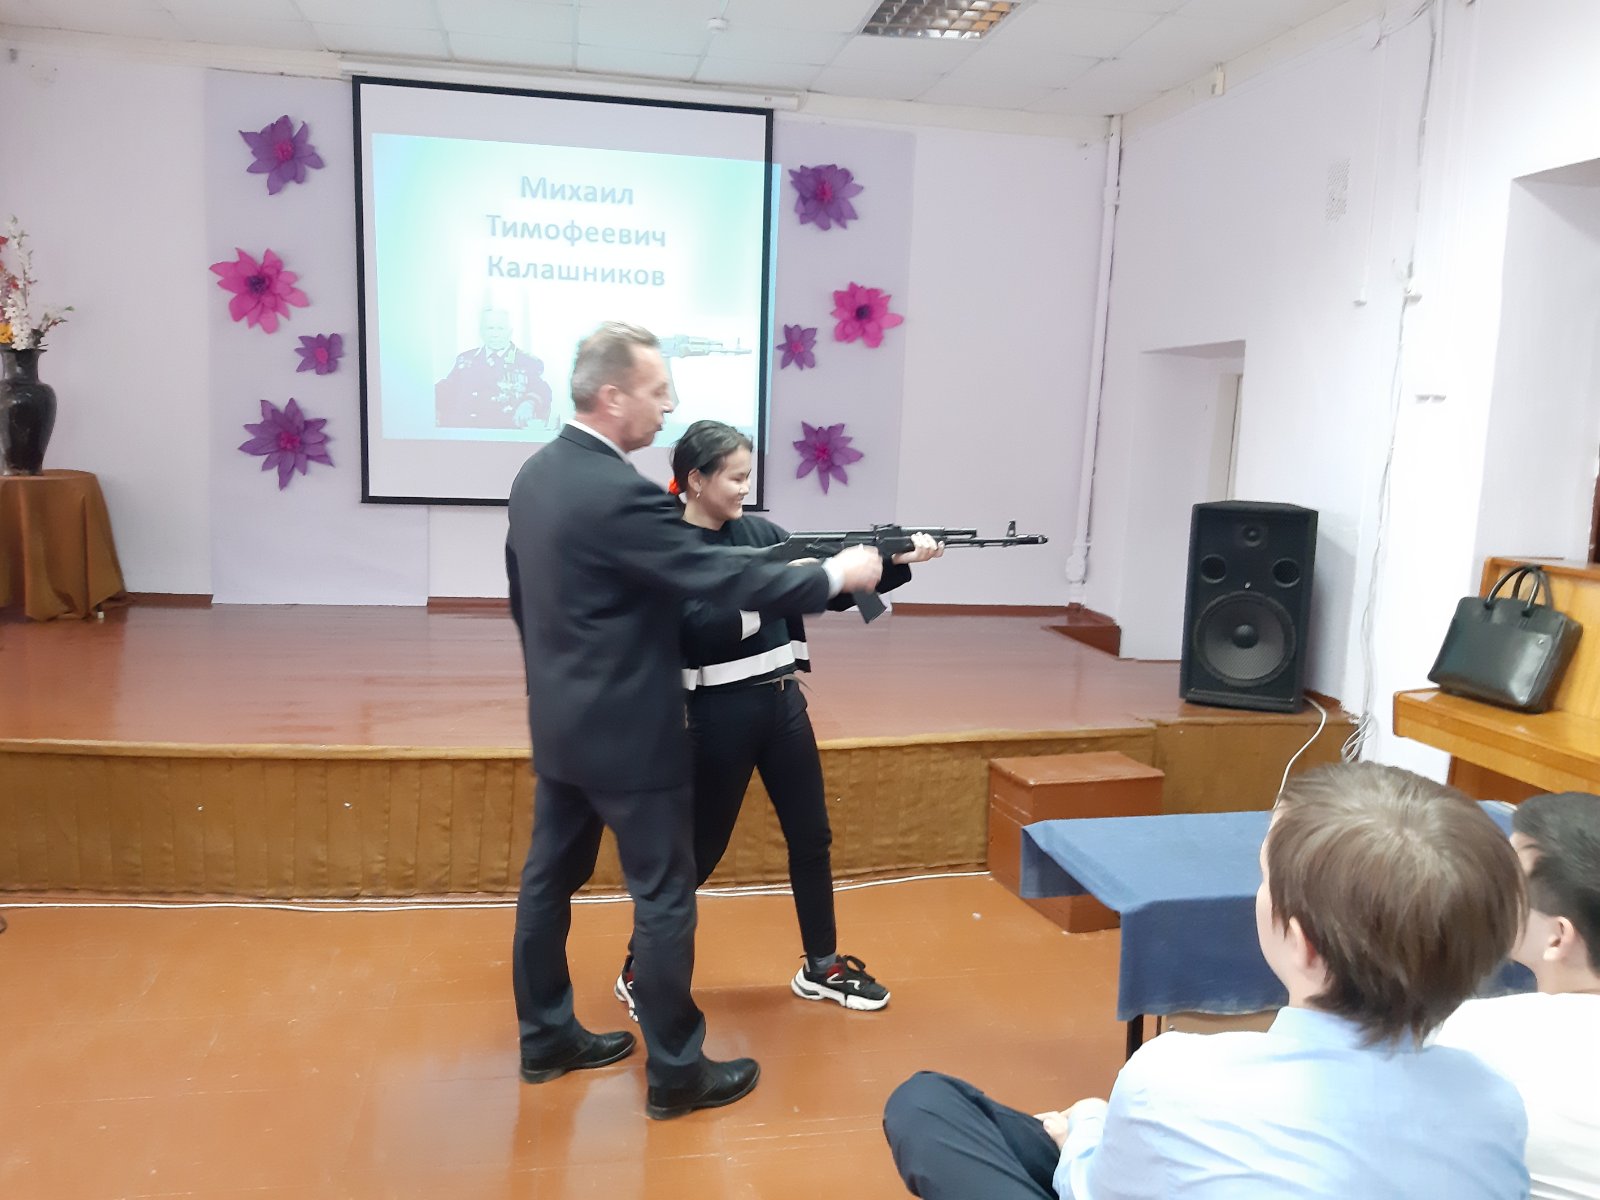 Novosti_2019_/Kalashnikov/izobrazhenie_viber_2019-11-18_13-19-15.jpg